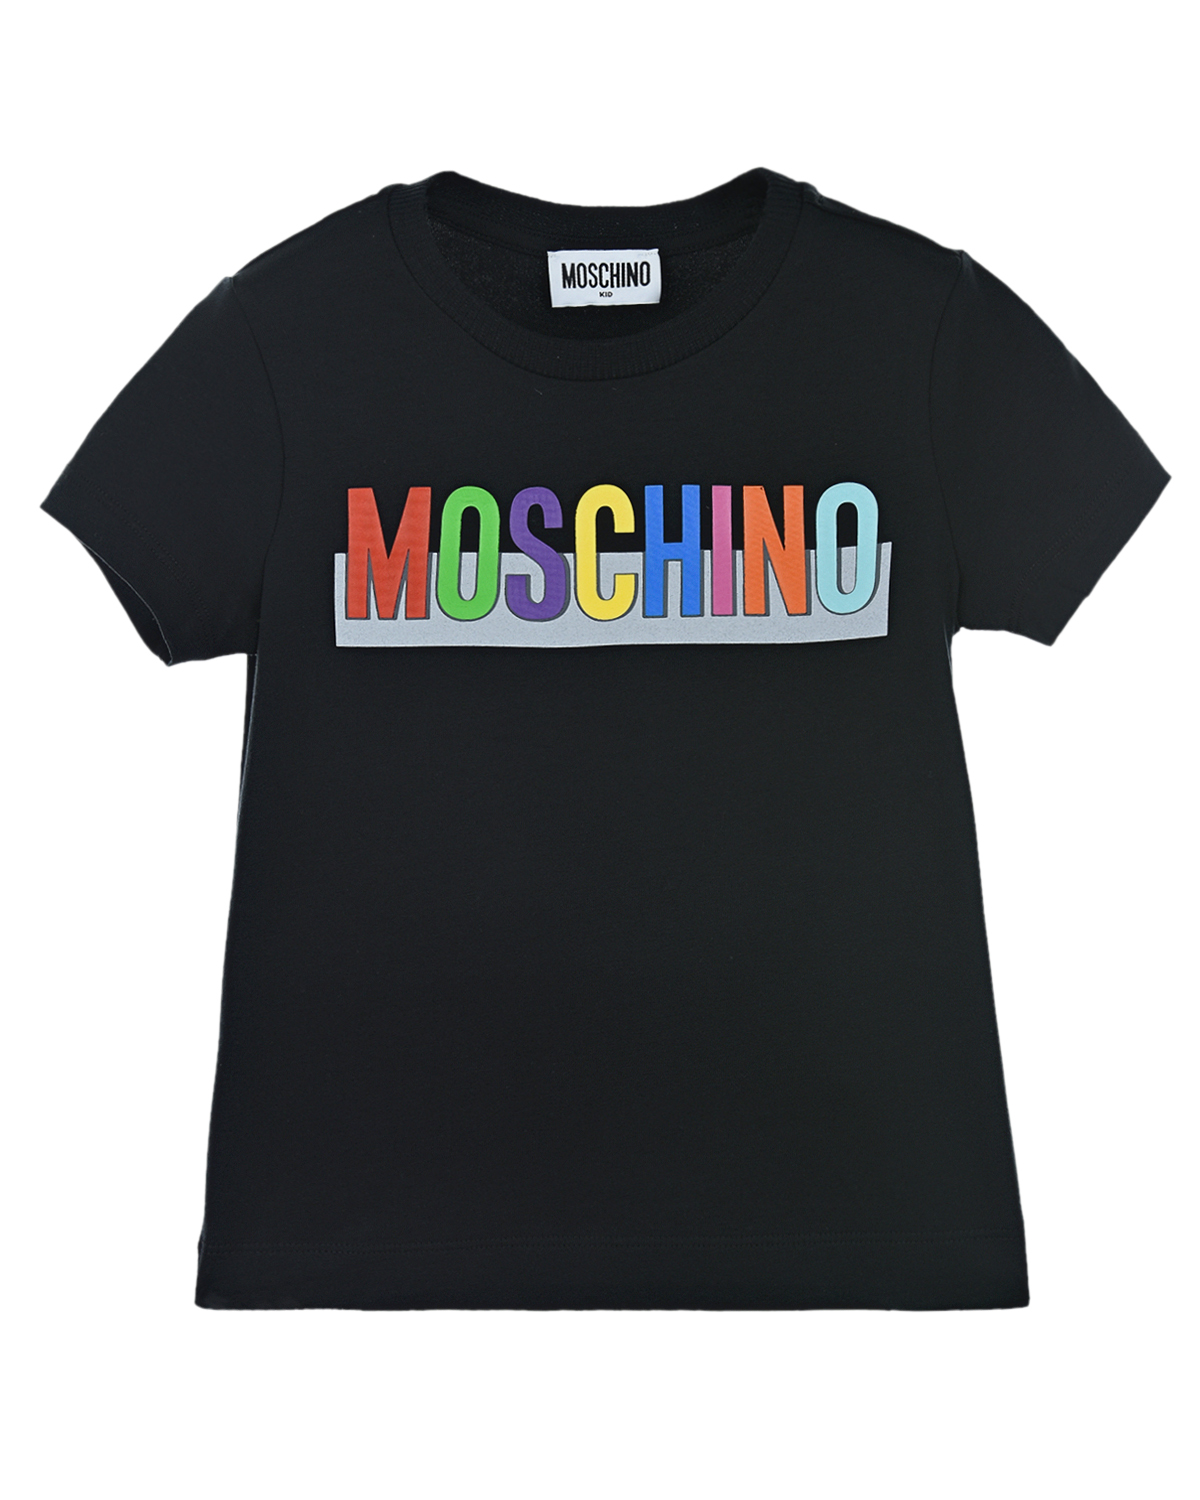 Купить Черная футболка с радужным логотипом Moschino детская, Черный, 94%хлопок+6%эластан, 98%хлопок+2%эластан